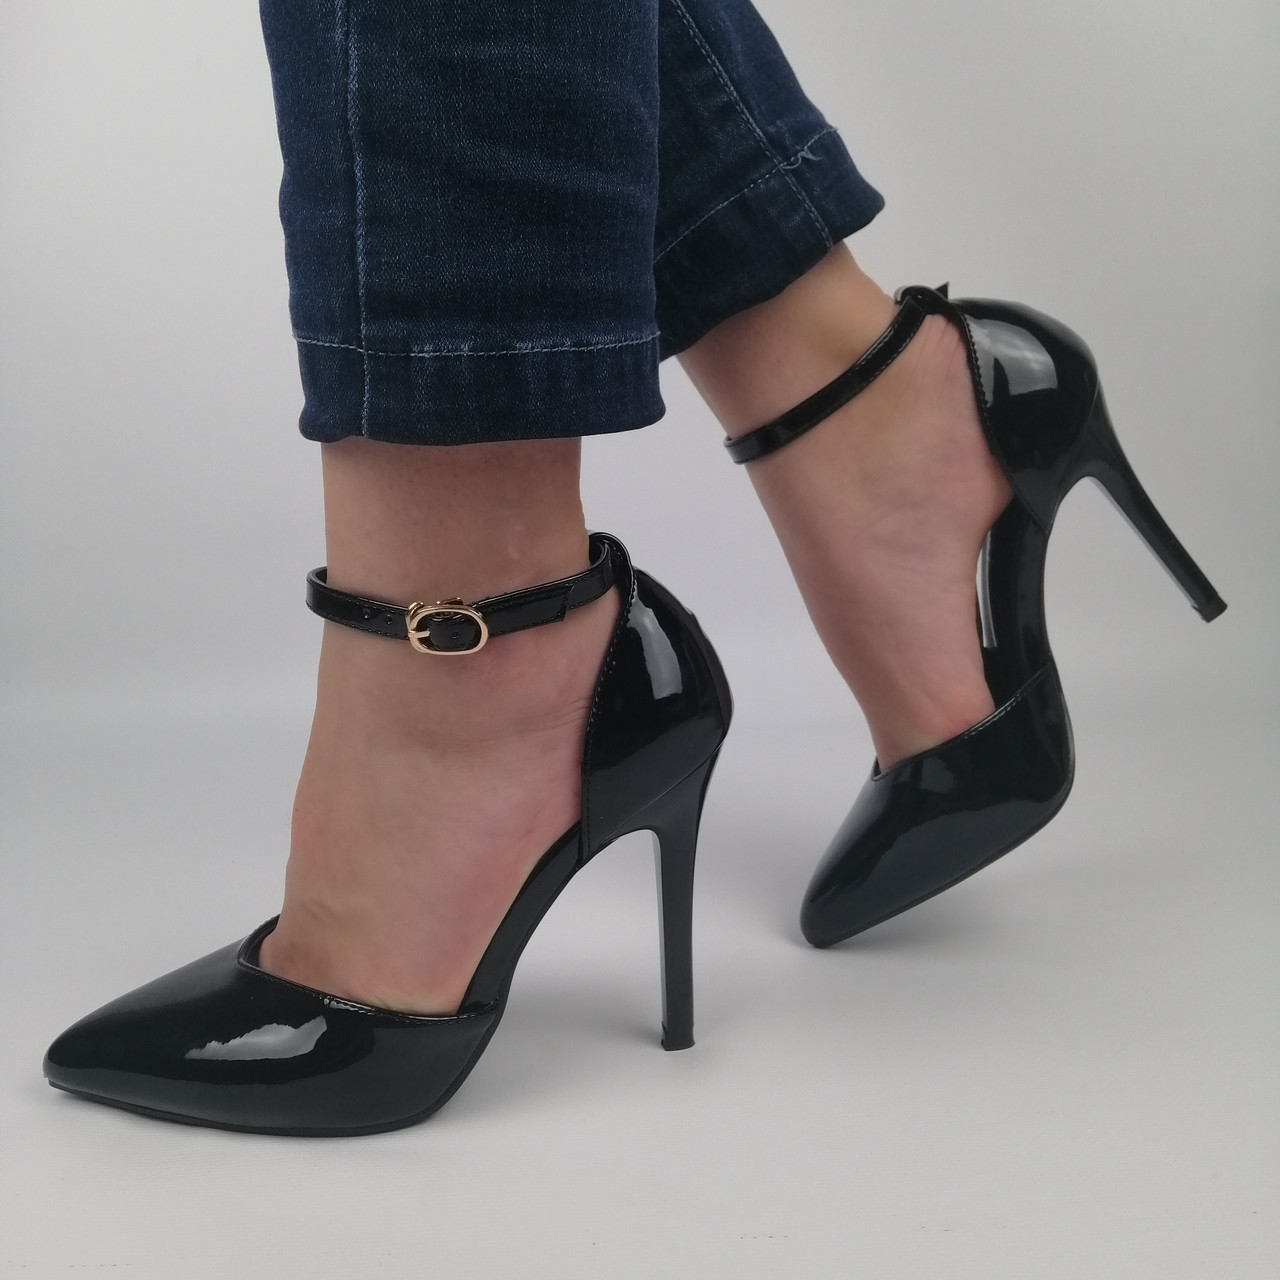 

Женские лакированные туфли на каблуке, черные 37(24,8 см), размеры:36,37,38,39,40